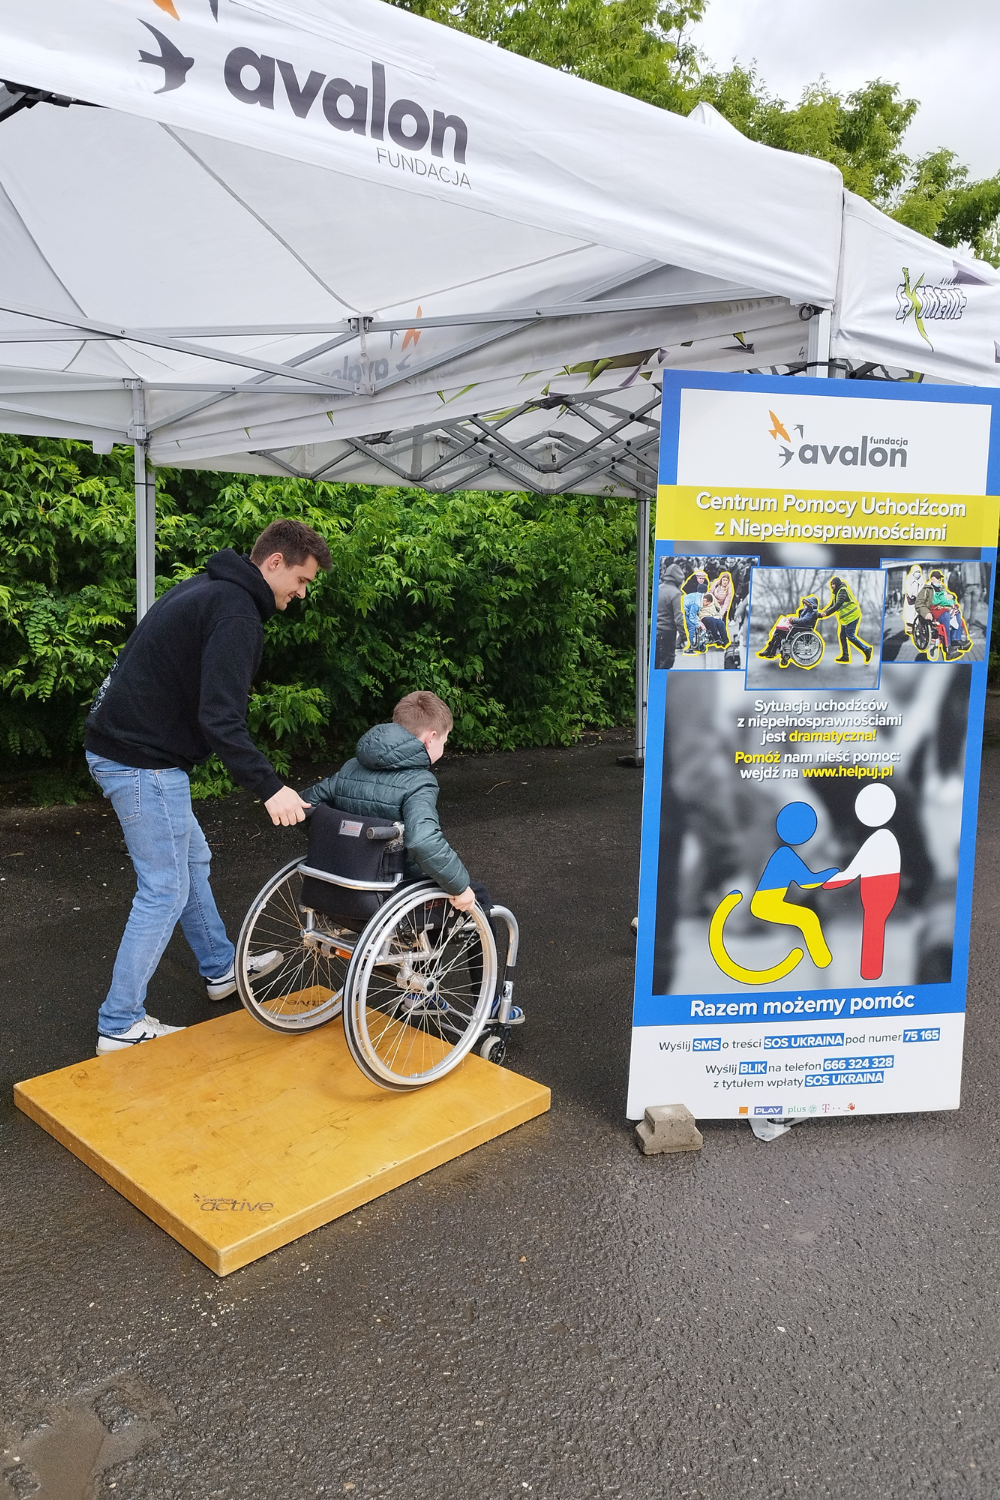 Na zdjęciu fizjoterapeuta pomaga chłopcu pokonać tor przeszkód na wózku. Obok rool-up Centrum Pomocy Uchodźcom z Niepełnosprawnościami